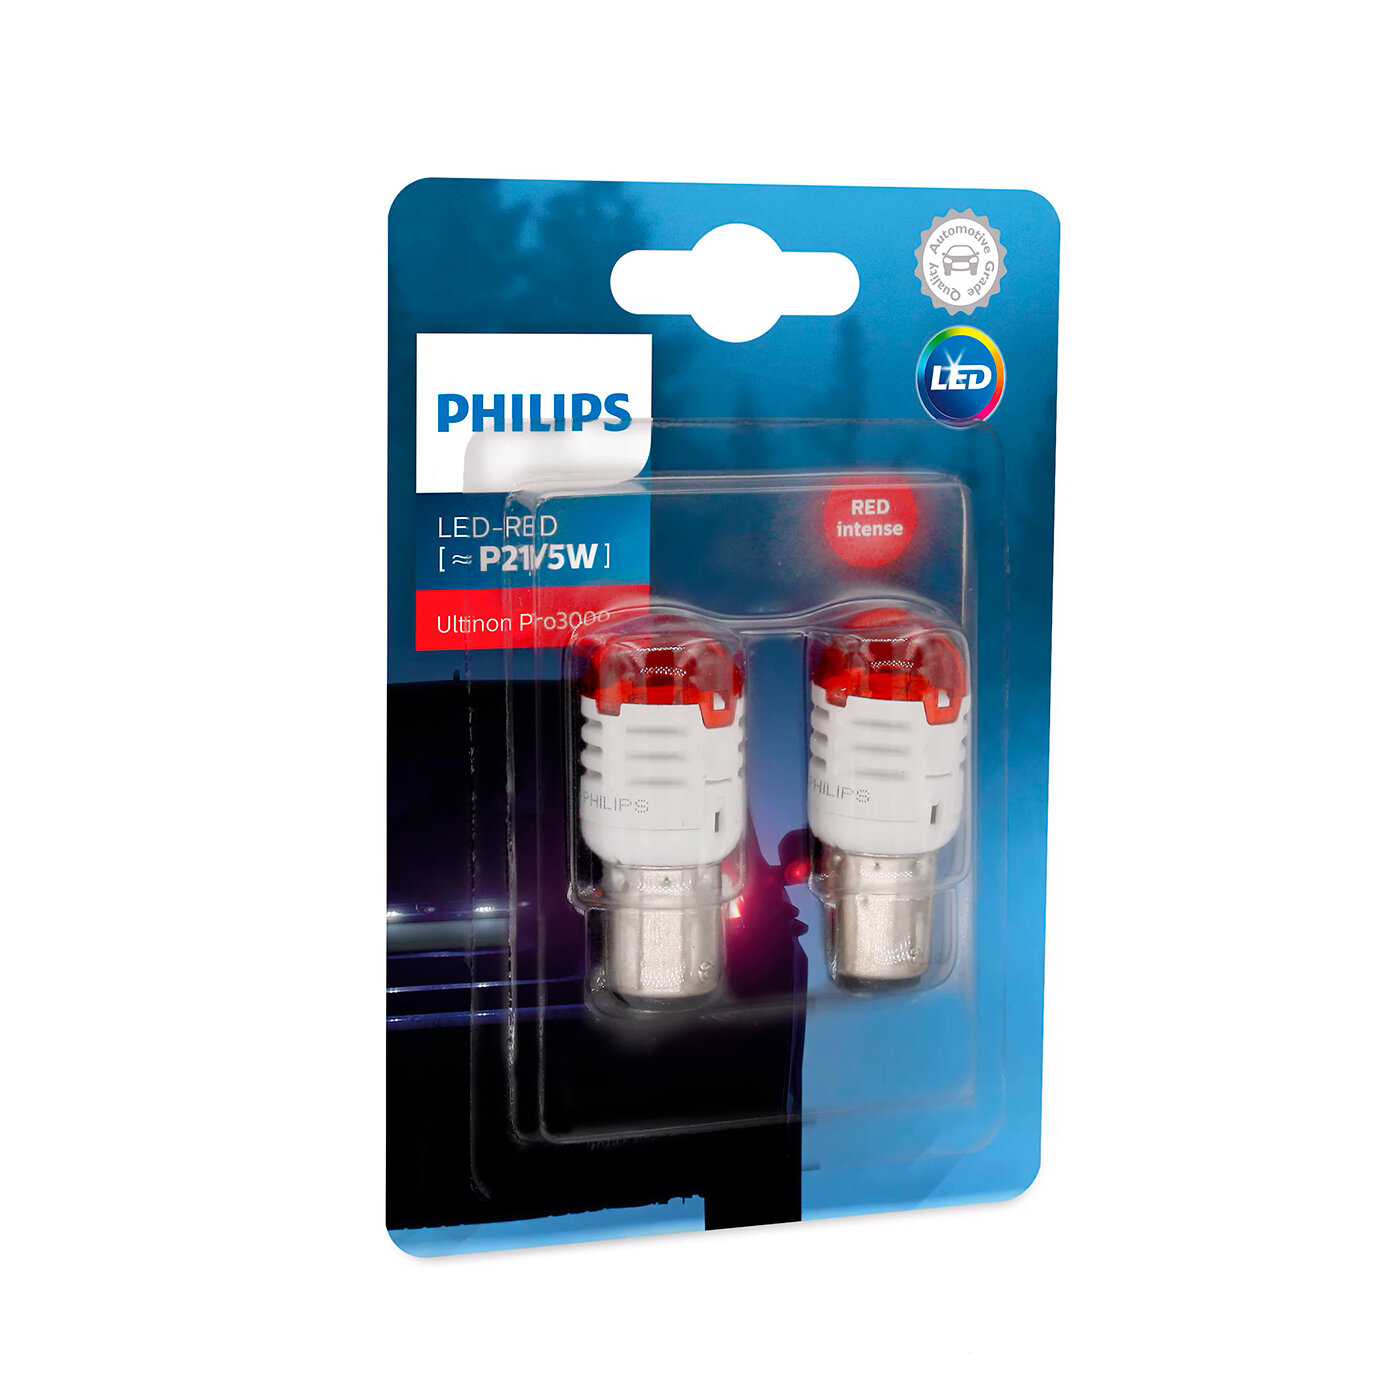 Лампа светодиодная Philips Ultinon Pro3000 SI P21/5W 12В 0,8/1,75 Вт BAY15d красный, 2 шт. (блистер)